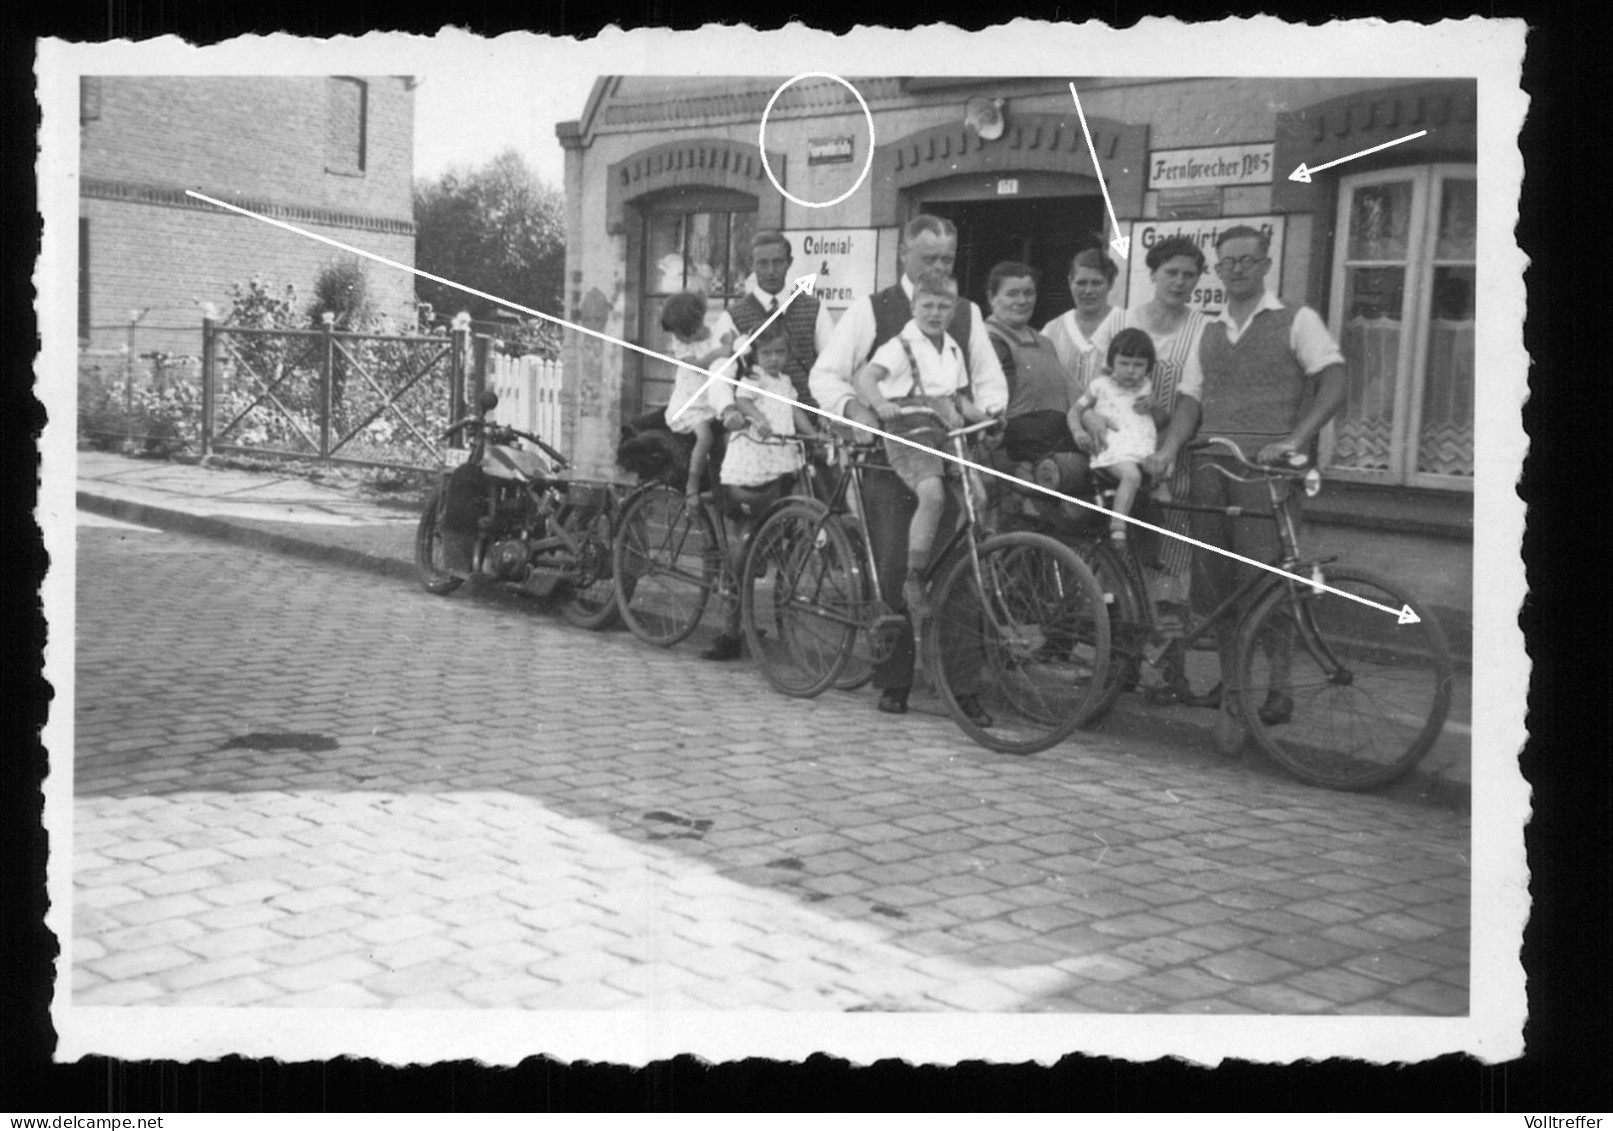 Orig. Foto Bremen Vegesack 1933 Radfahrer Vor Fett- Und Kolonialwaren Gastwirtschaft, Hausnummer 176 Straßenschild - Bremen